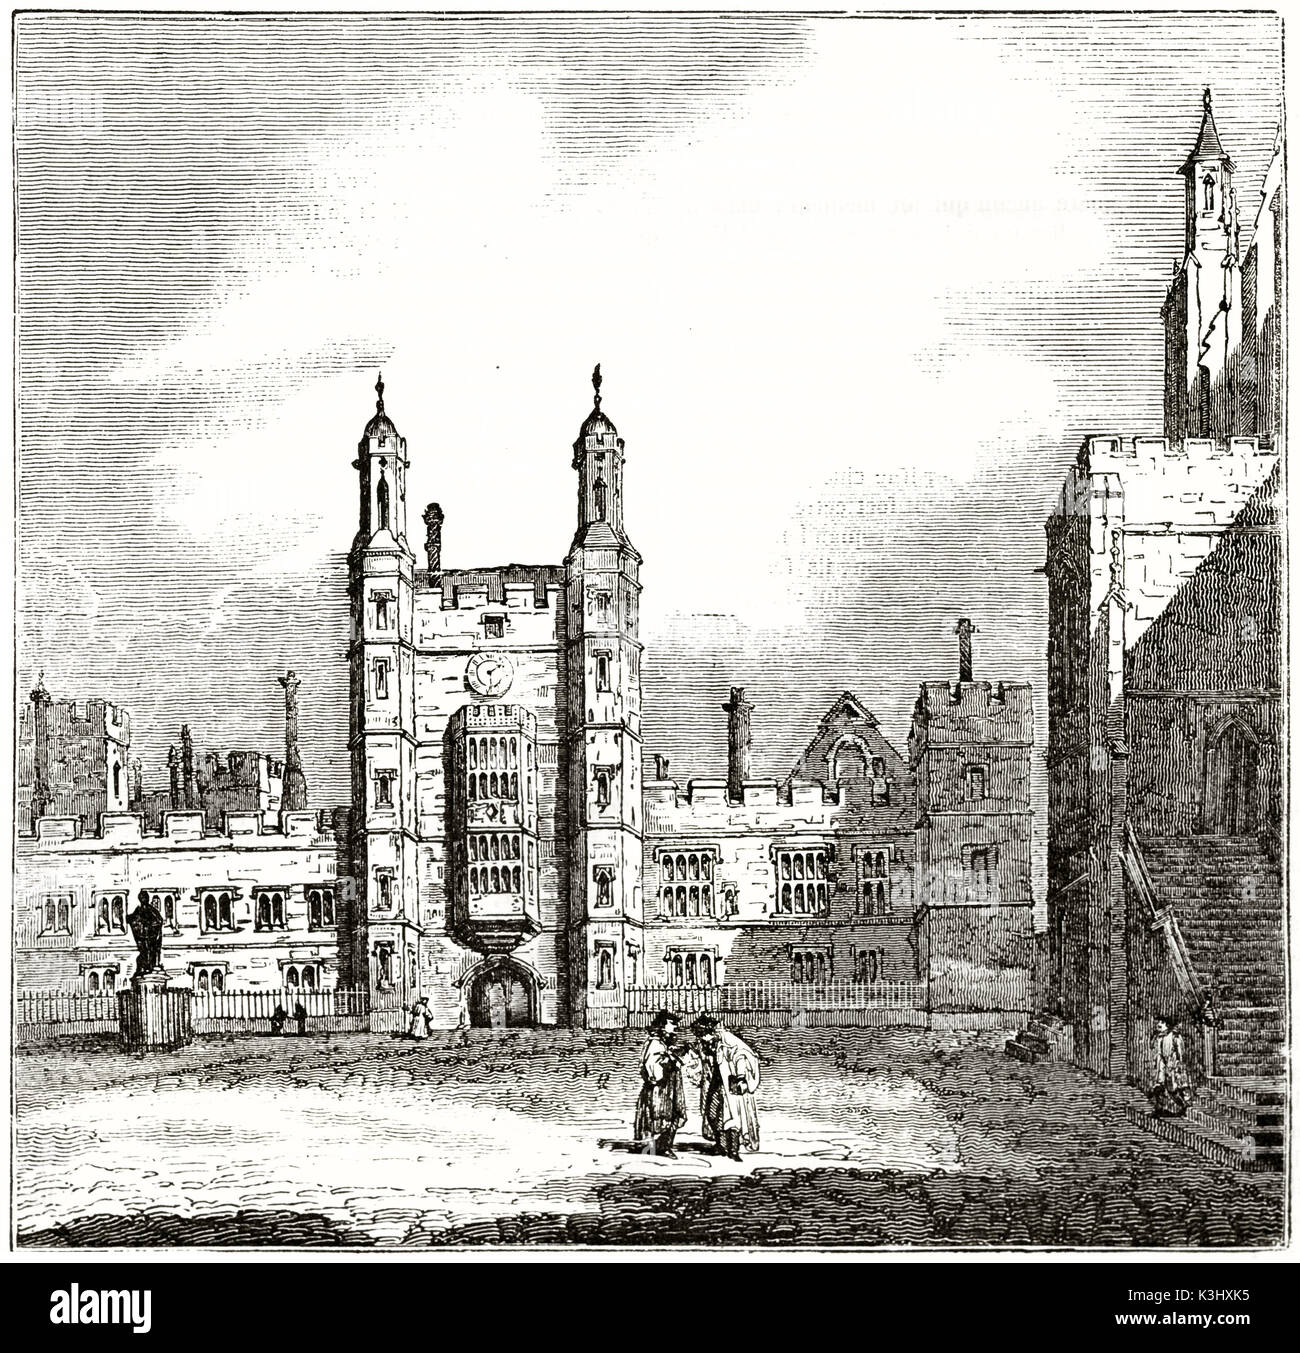 Vecchio vista di Eton College del quadrangolo, Inghilterra. Da autore non identificato, pubblicato il Magasin pittoresco, Parigi, 1838 Foto Stock